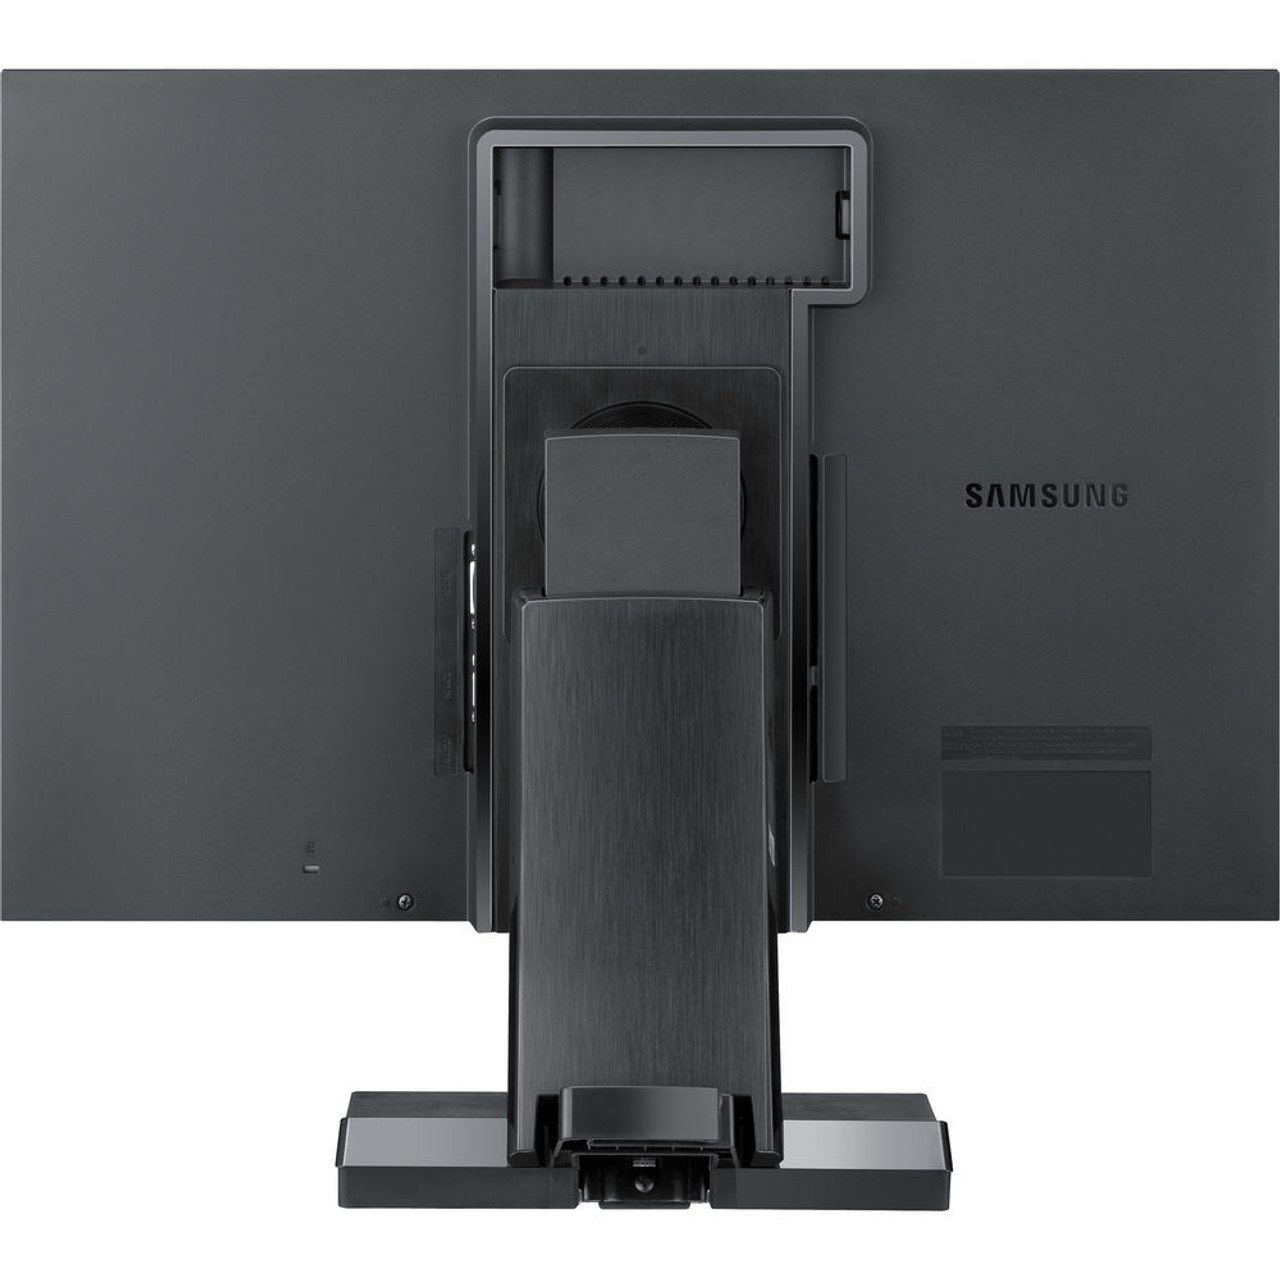 Samsung Sync Master SA450 22" LED Monitor